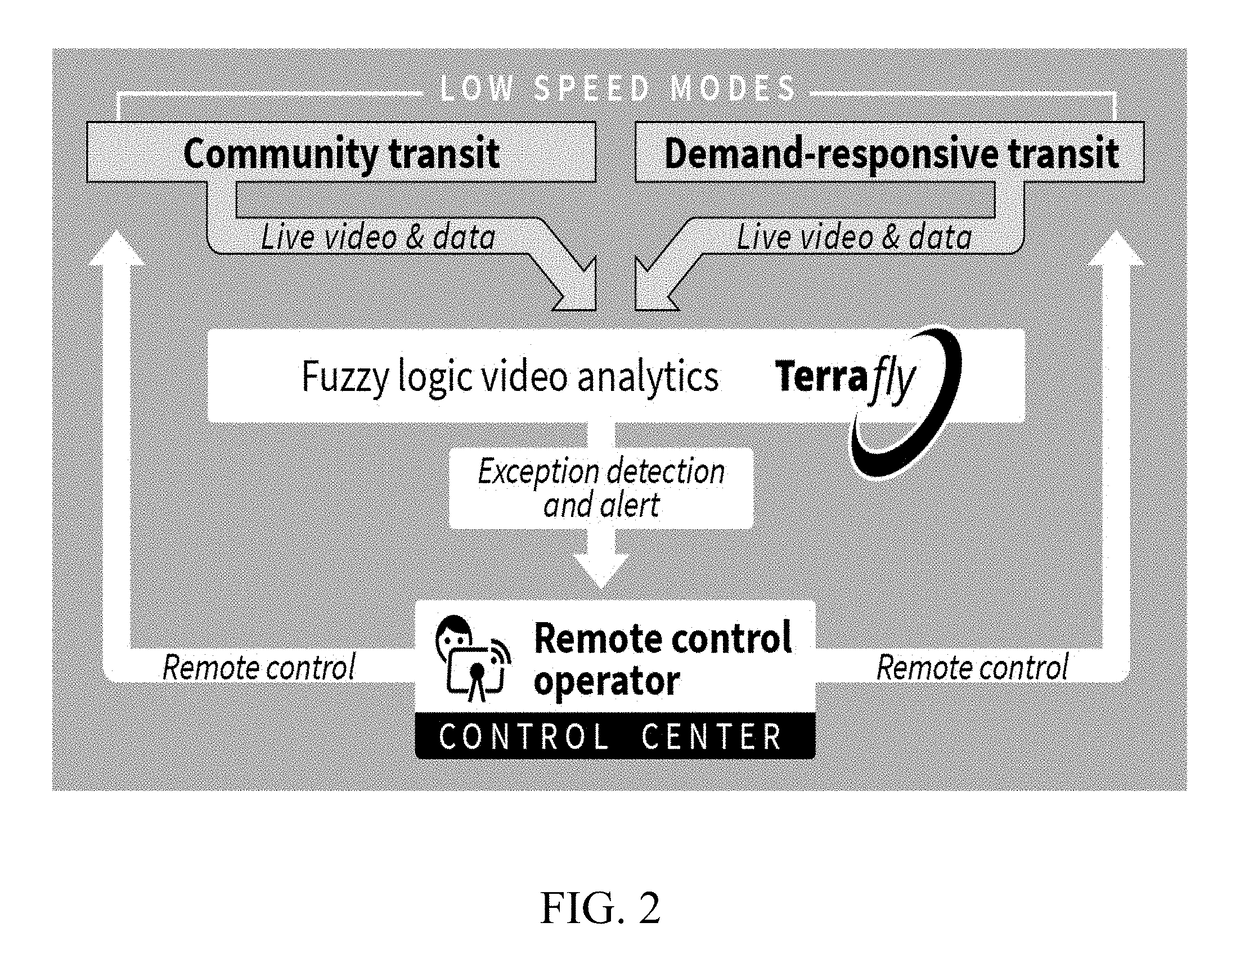 Remote control and concierge service for an autonomous transit vehicle fleet